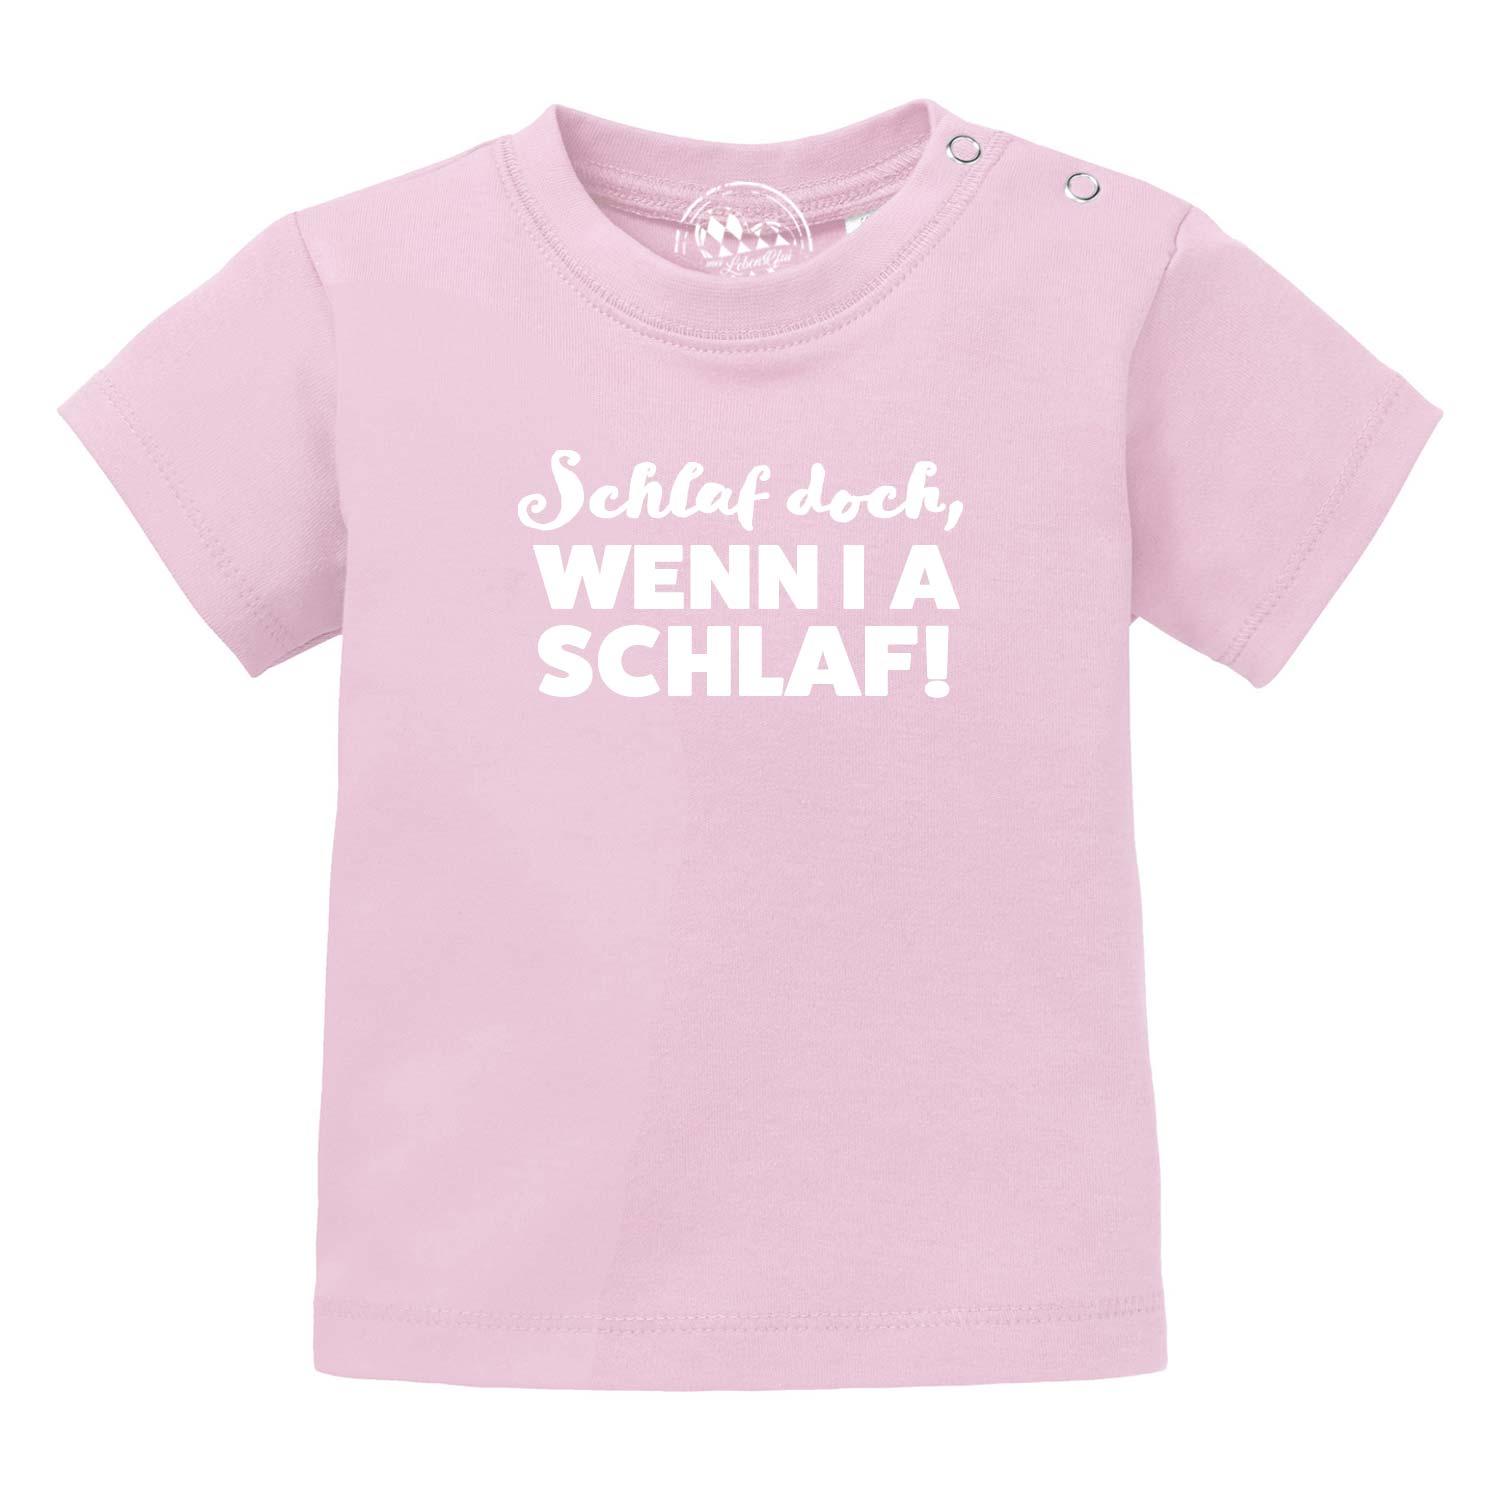 Baby T-Shirt "Schlaf, wenn i a schlaf!" - bavariashop - mei LebensGfui